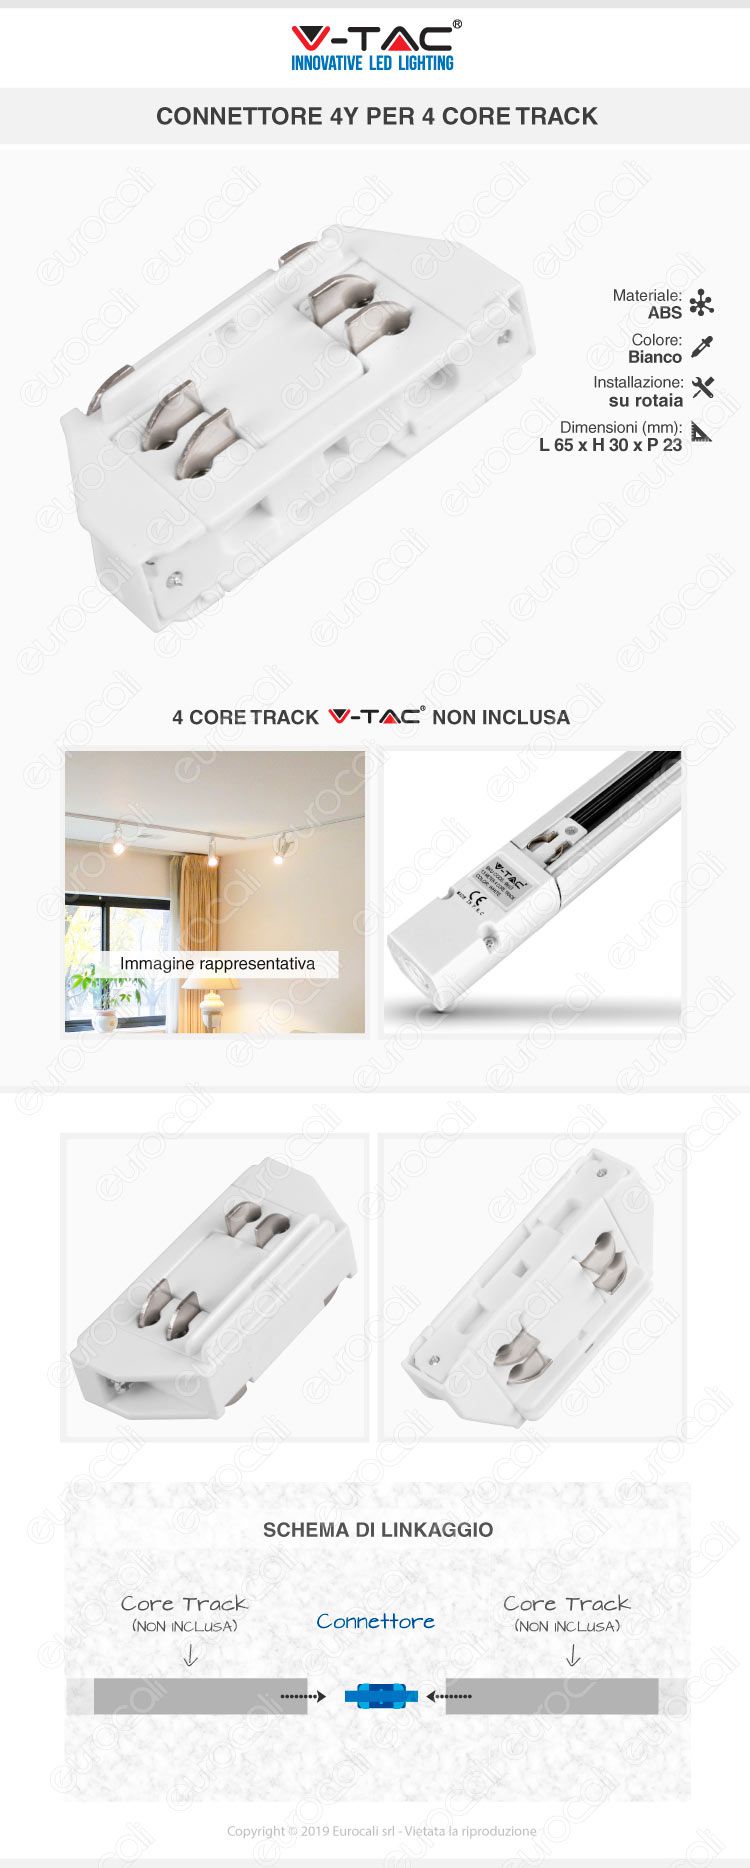 V-Tac PRO VT-7-42LN Coppia di Lampade LED Raccordo a Incasso Linear Light 10W Chip Samsung White Body